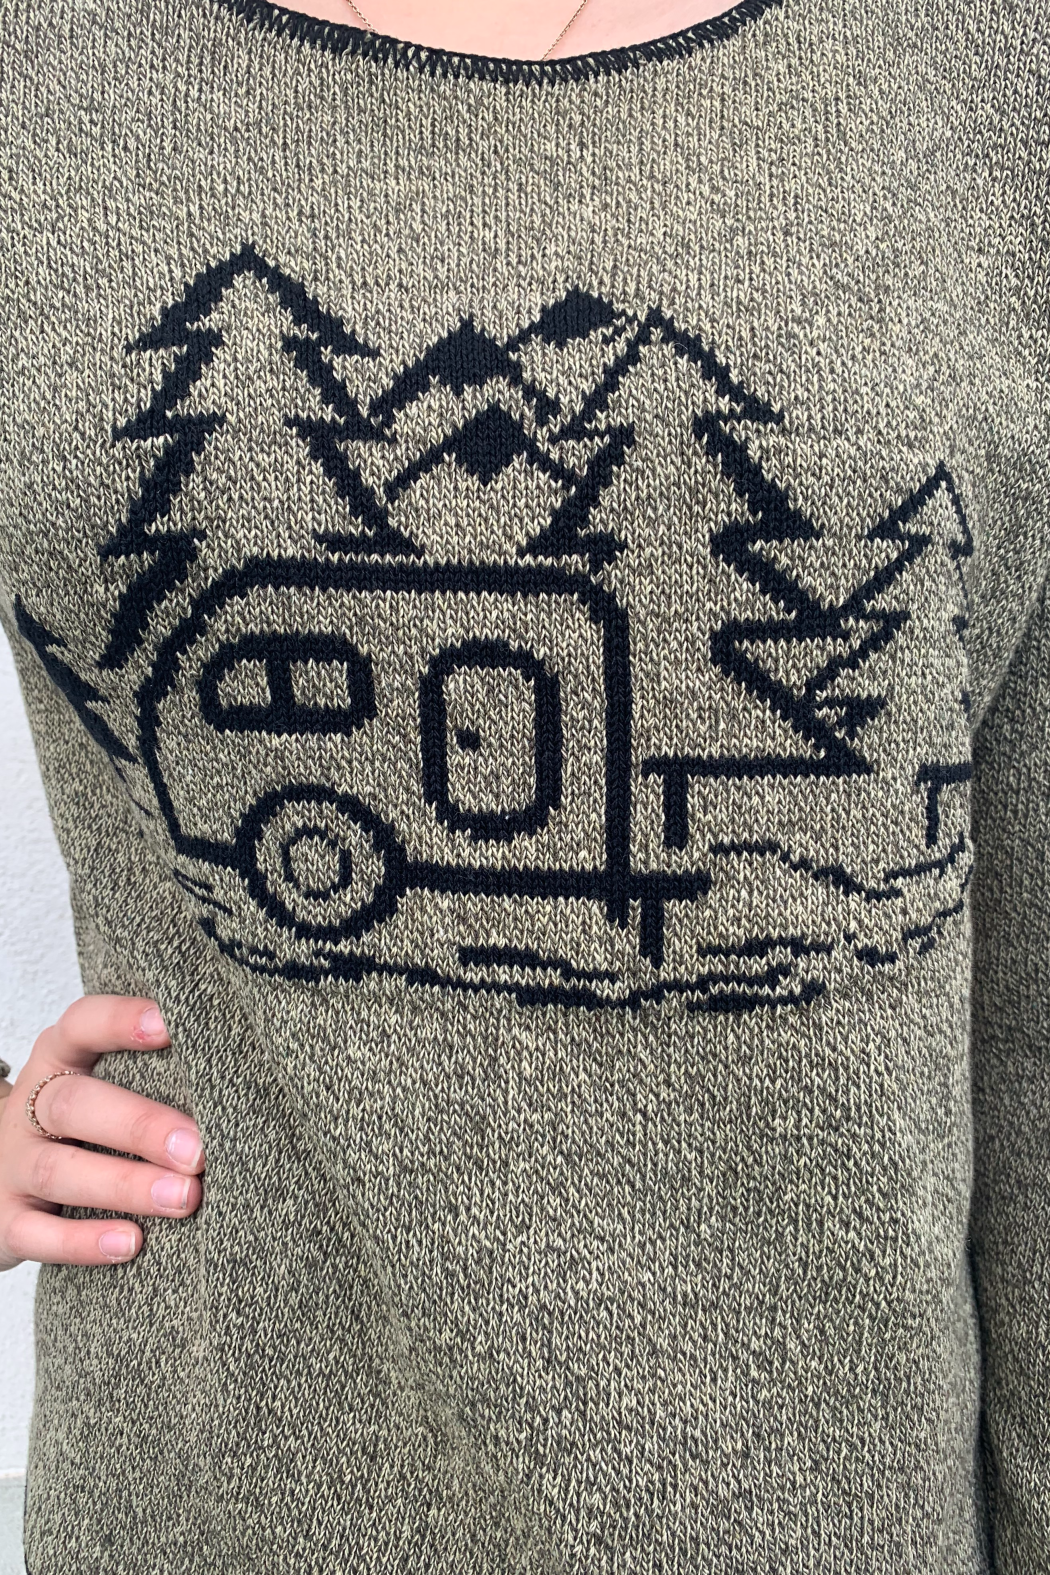 Camper Sweater